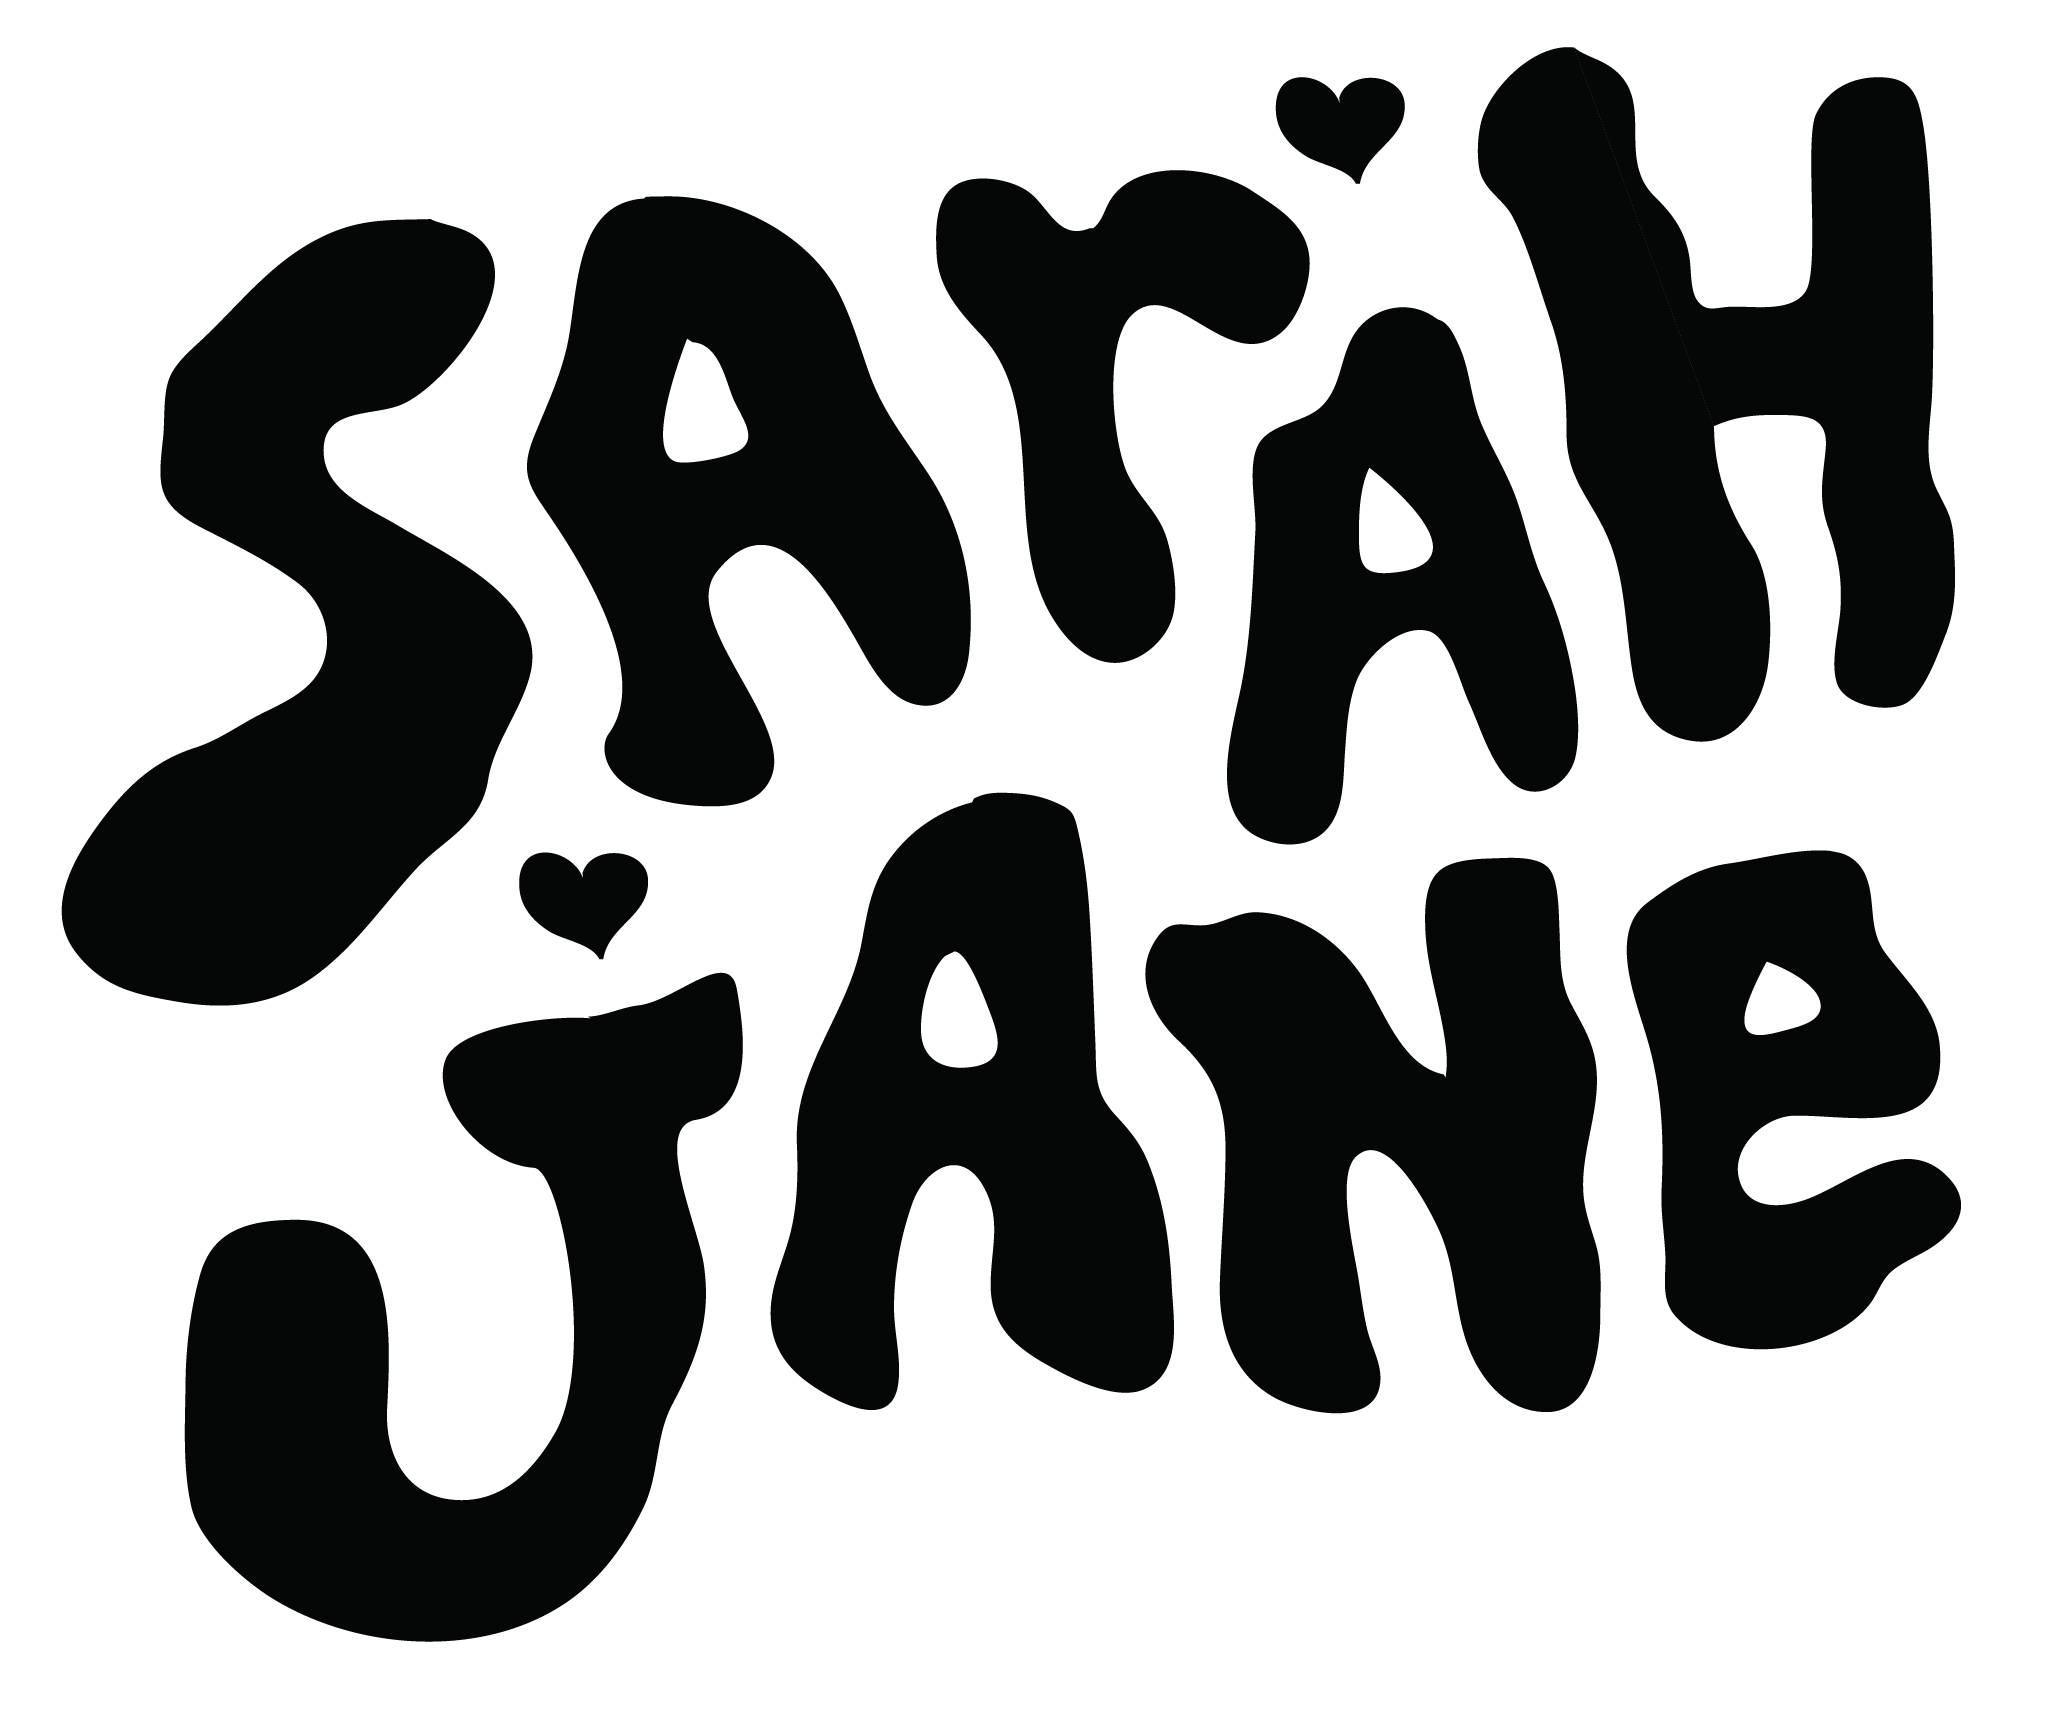 Sarah Jane Music Band Logo Black